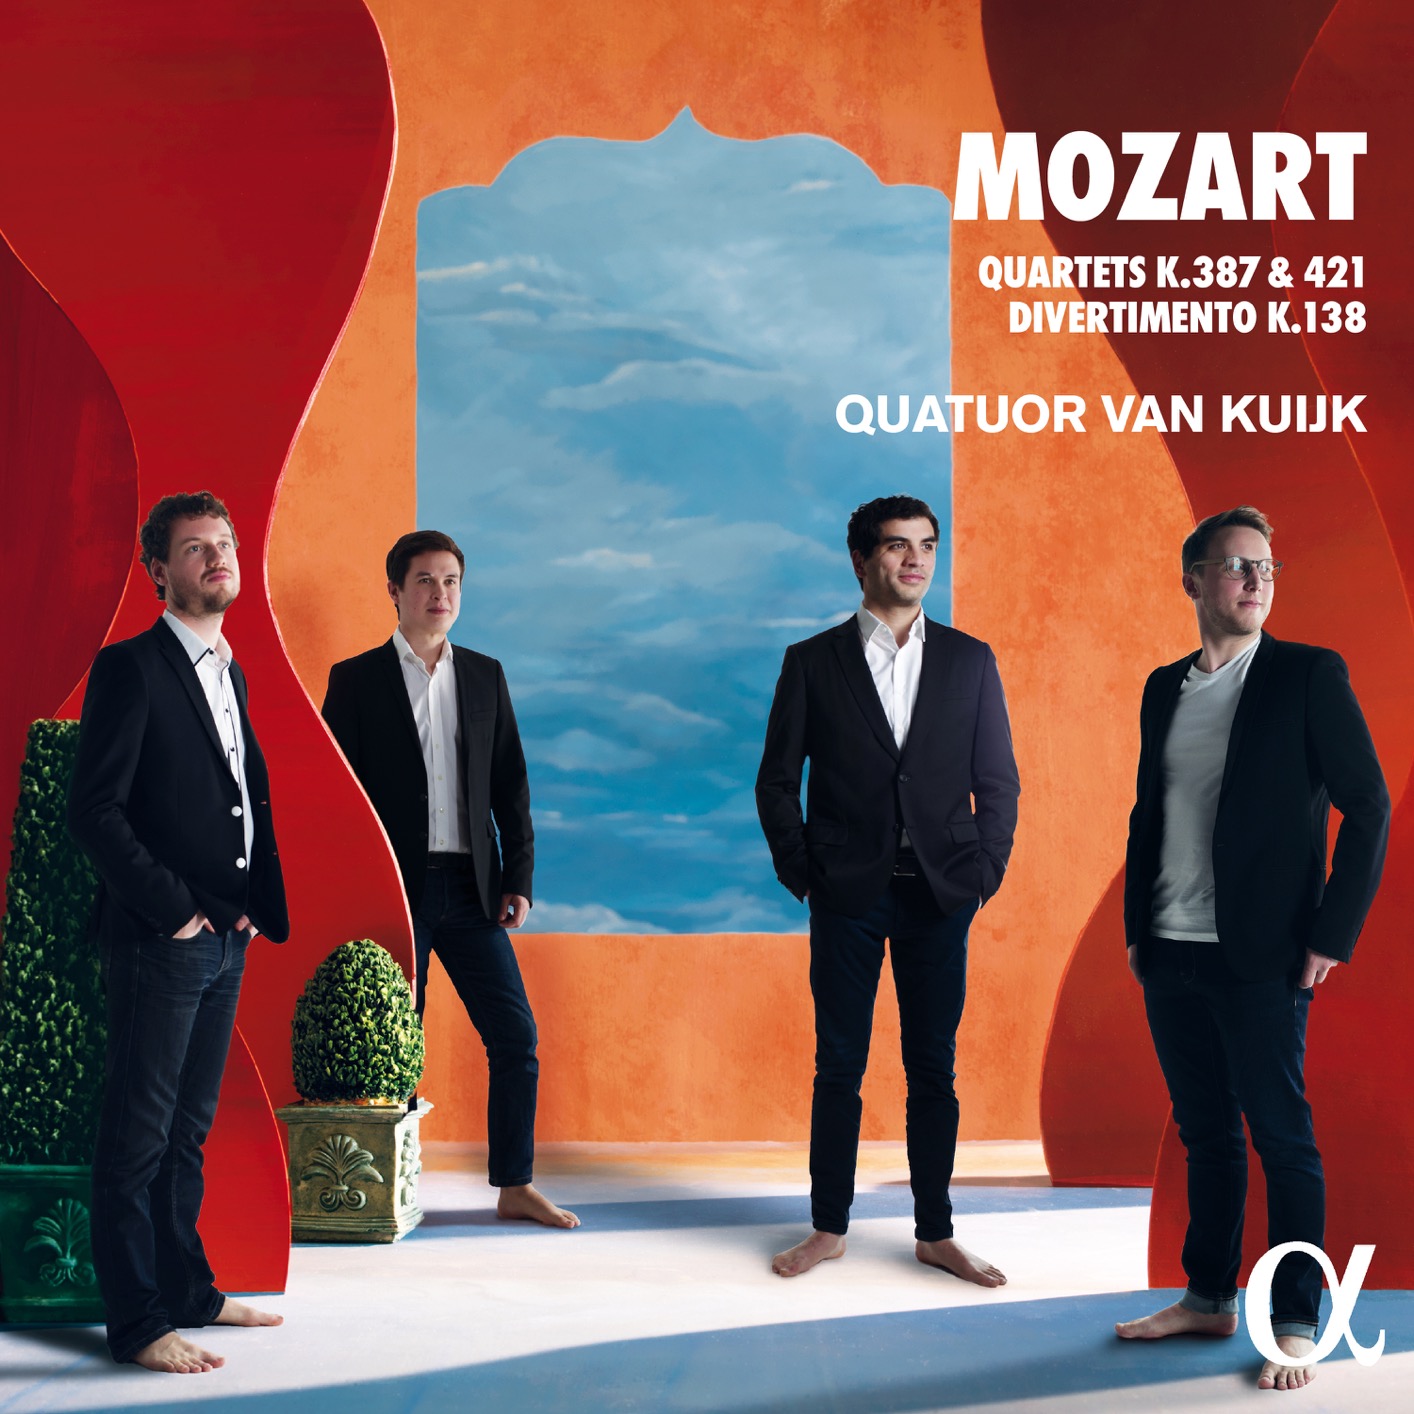 Quatuor Van Kuijk – Mozart: Quartets K.387, K.421 & Divertimento K.138 (2019) [FLAC 24bit/96kHz]